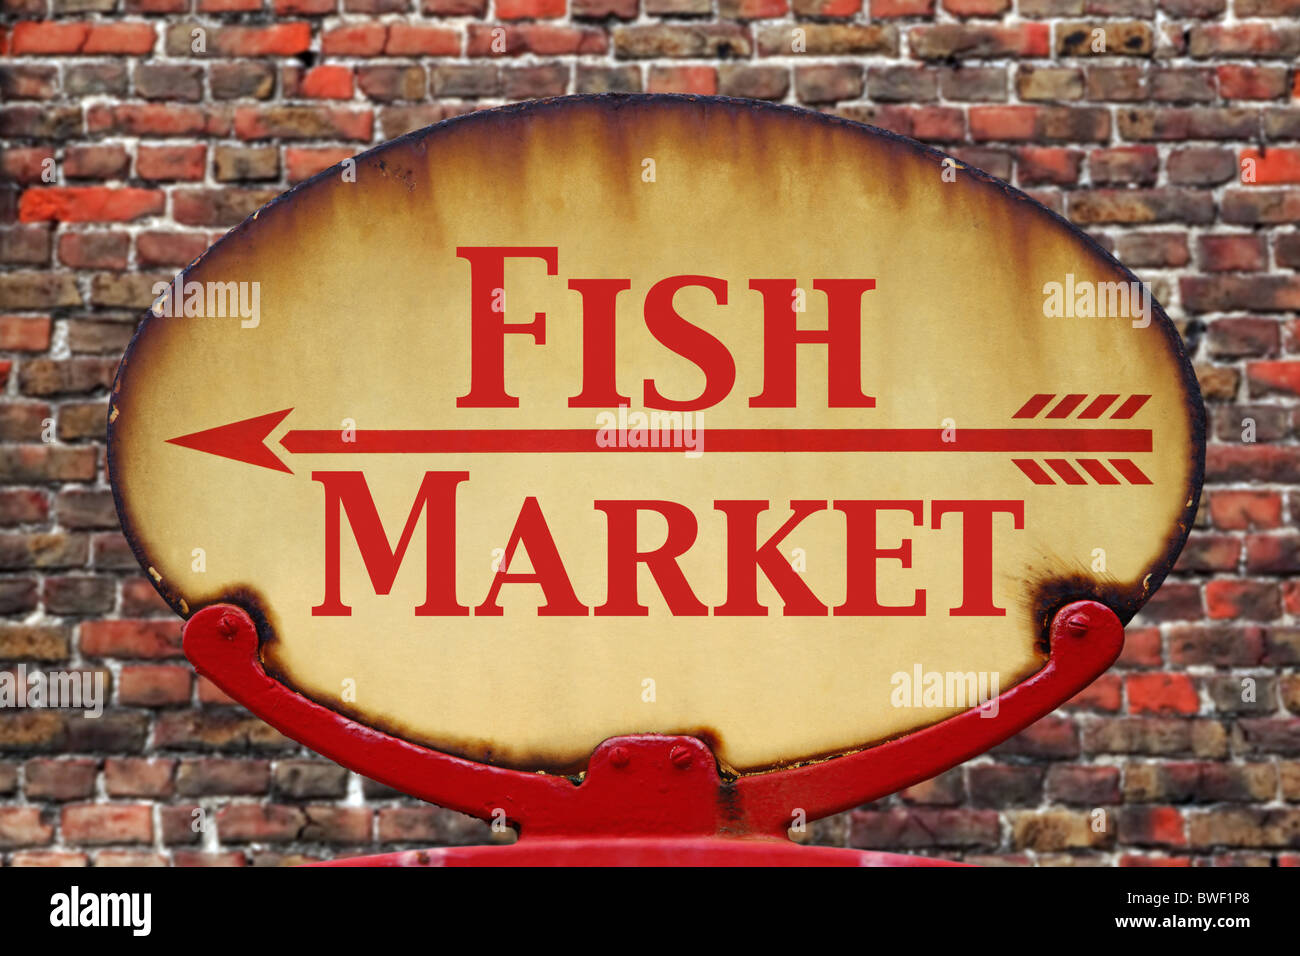 Un vieux rétro rouillé arrow sign avec le marché aux poissons de texte Banque D'Images